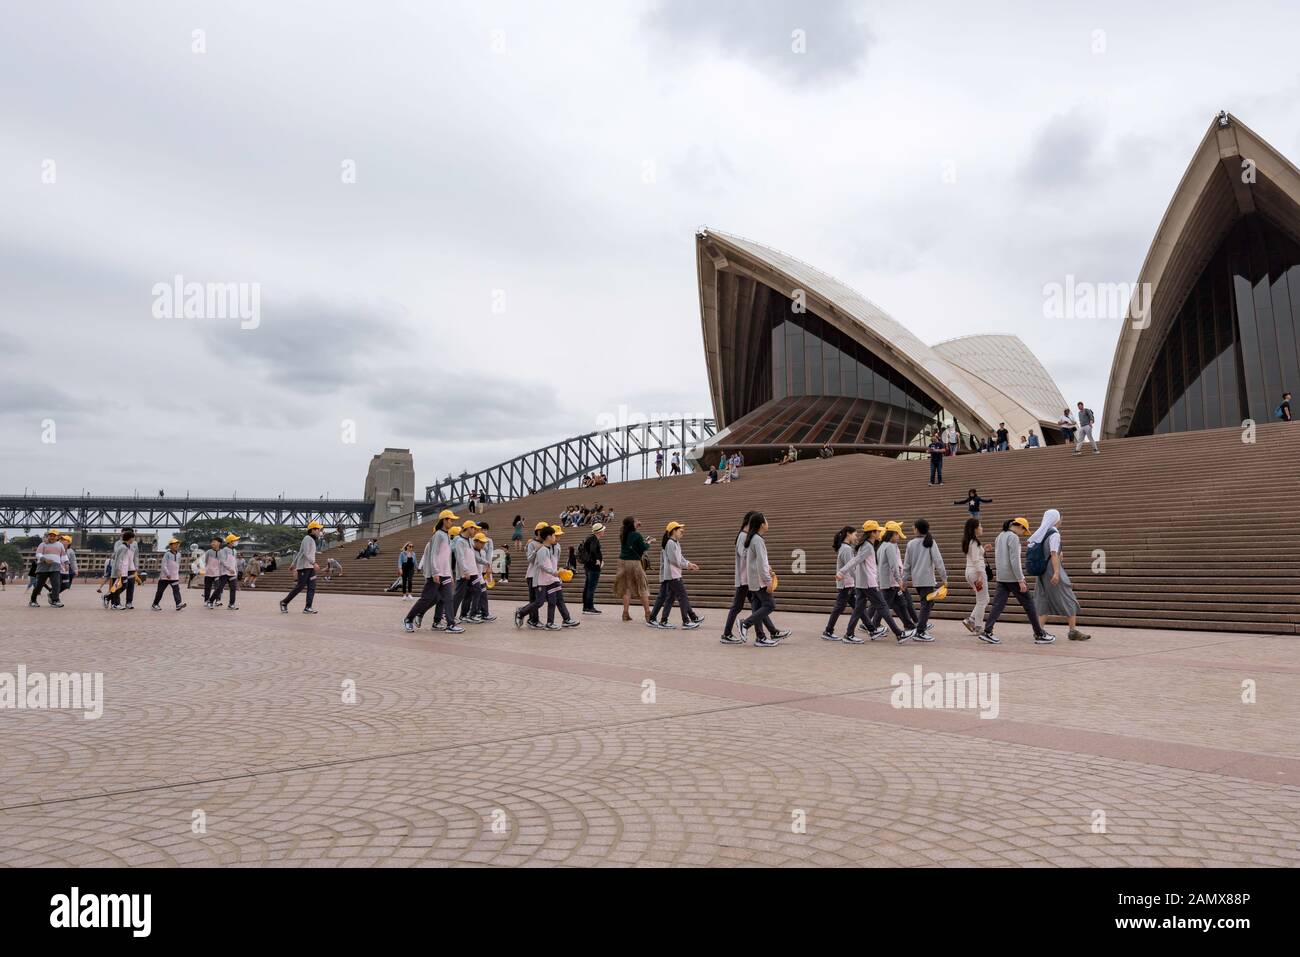 Un nun catholique dirige un groupe de jeunes enfants asiatiques âgés d'une école primaire, portant principalement des casquettes jaunes, vers les marches de l'Opéra de Sydney. Banque D'Images